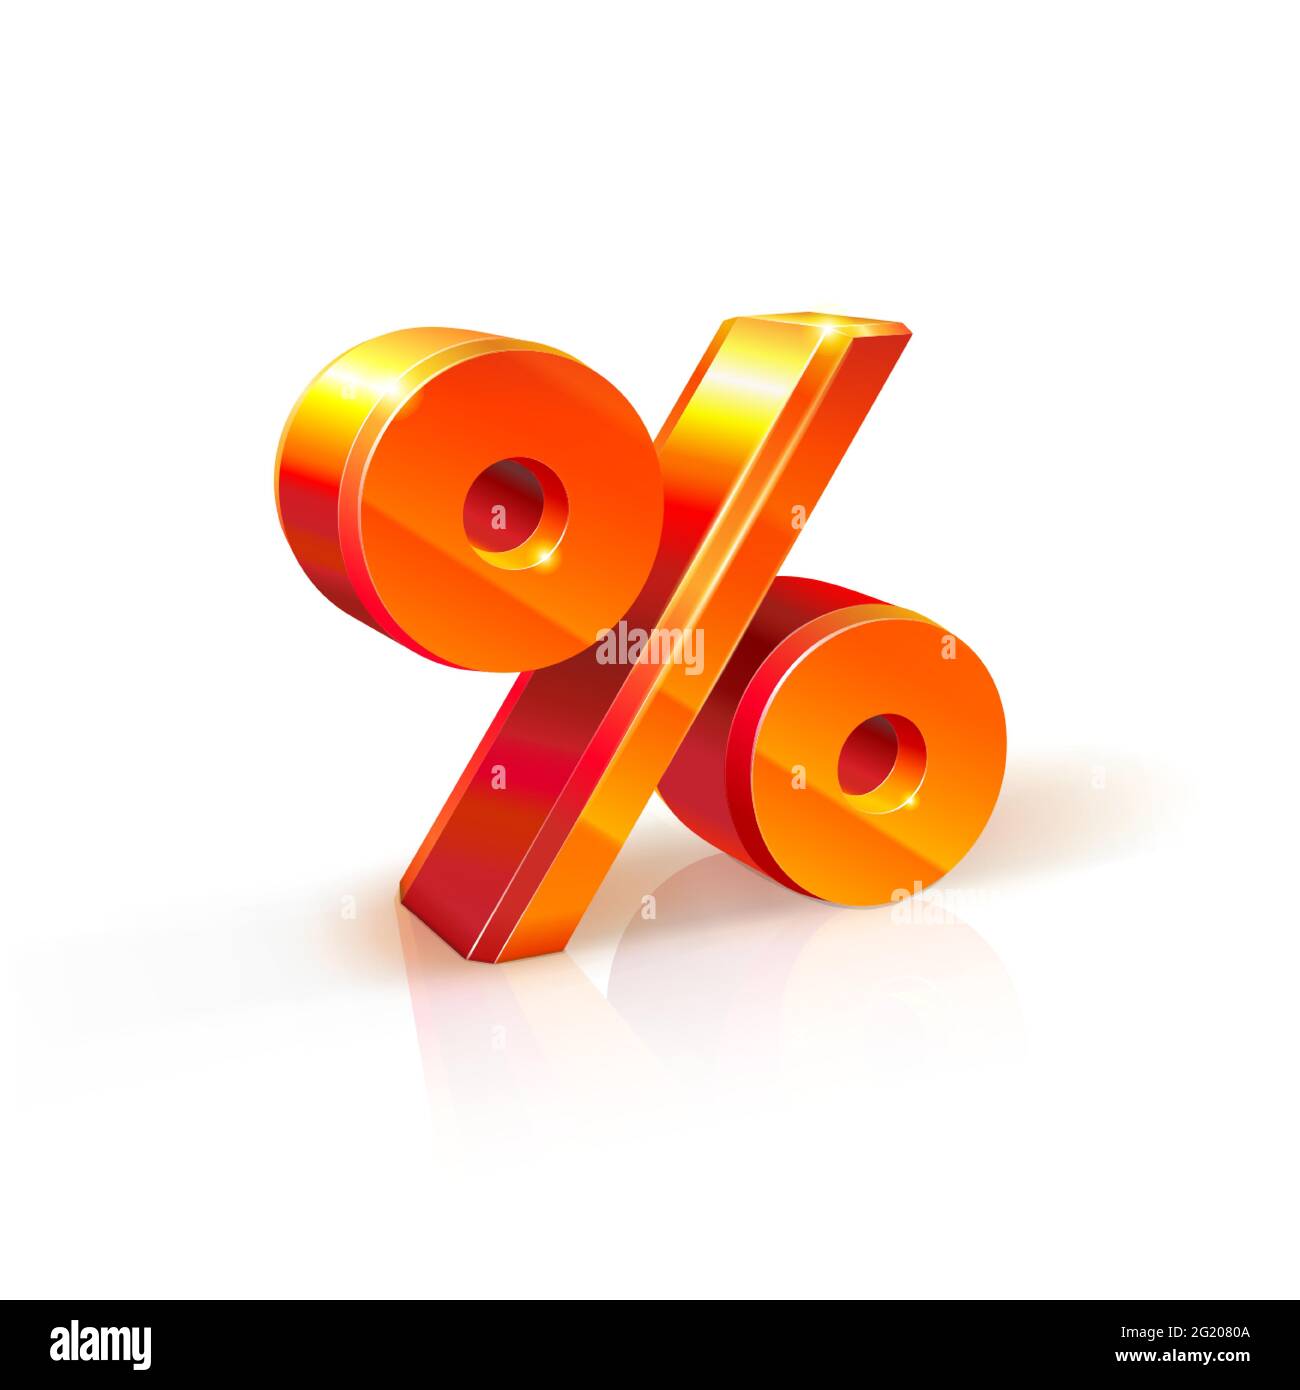 immagine del segno volumetrico percentuale % 3d arancione-rosso realistico. Isolato su sfondo bianco. Sconti, vendite, scopi pubblicitari Illustrazione Vettoriale